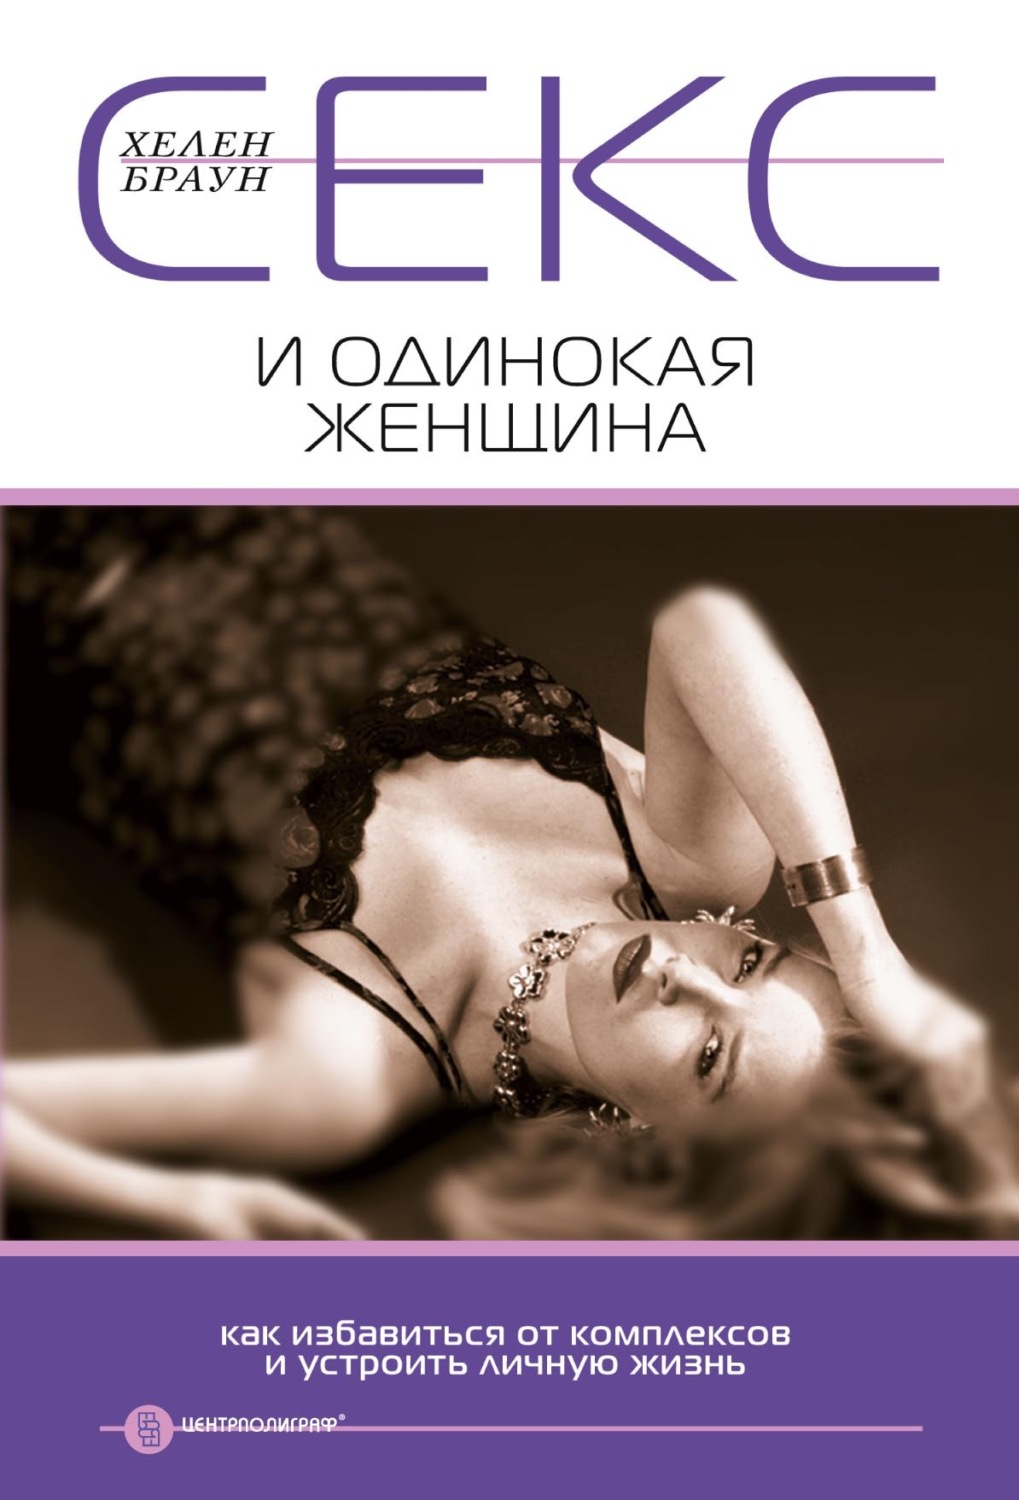 ТОП-7 книг о женщинах и женской сексуальности | Клиника Семейной Пары: статьи, новости, блог